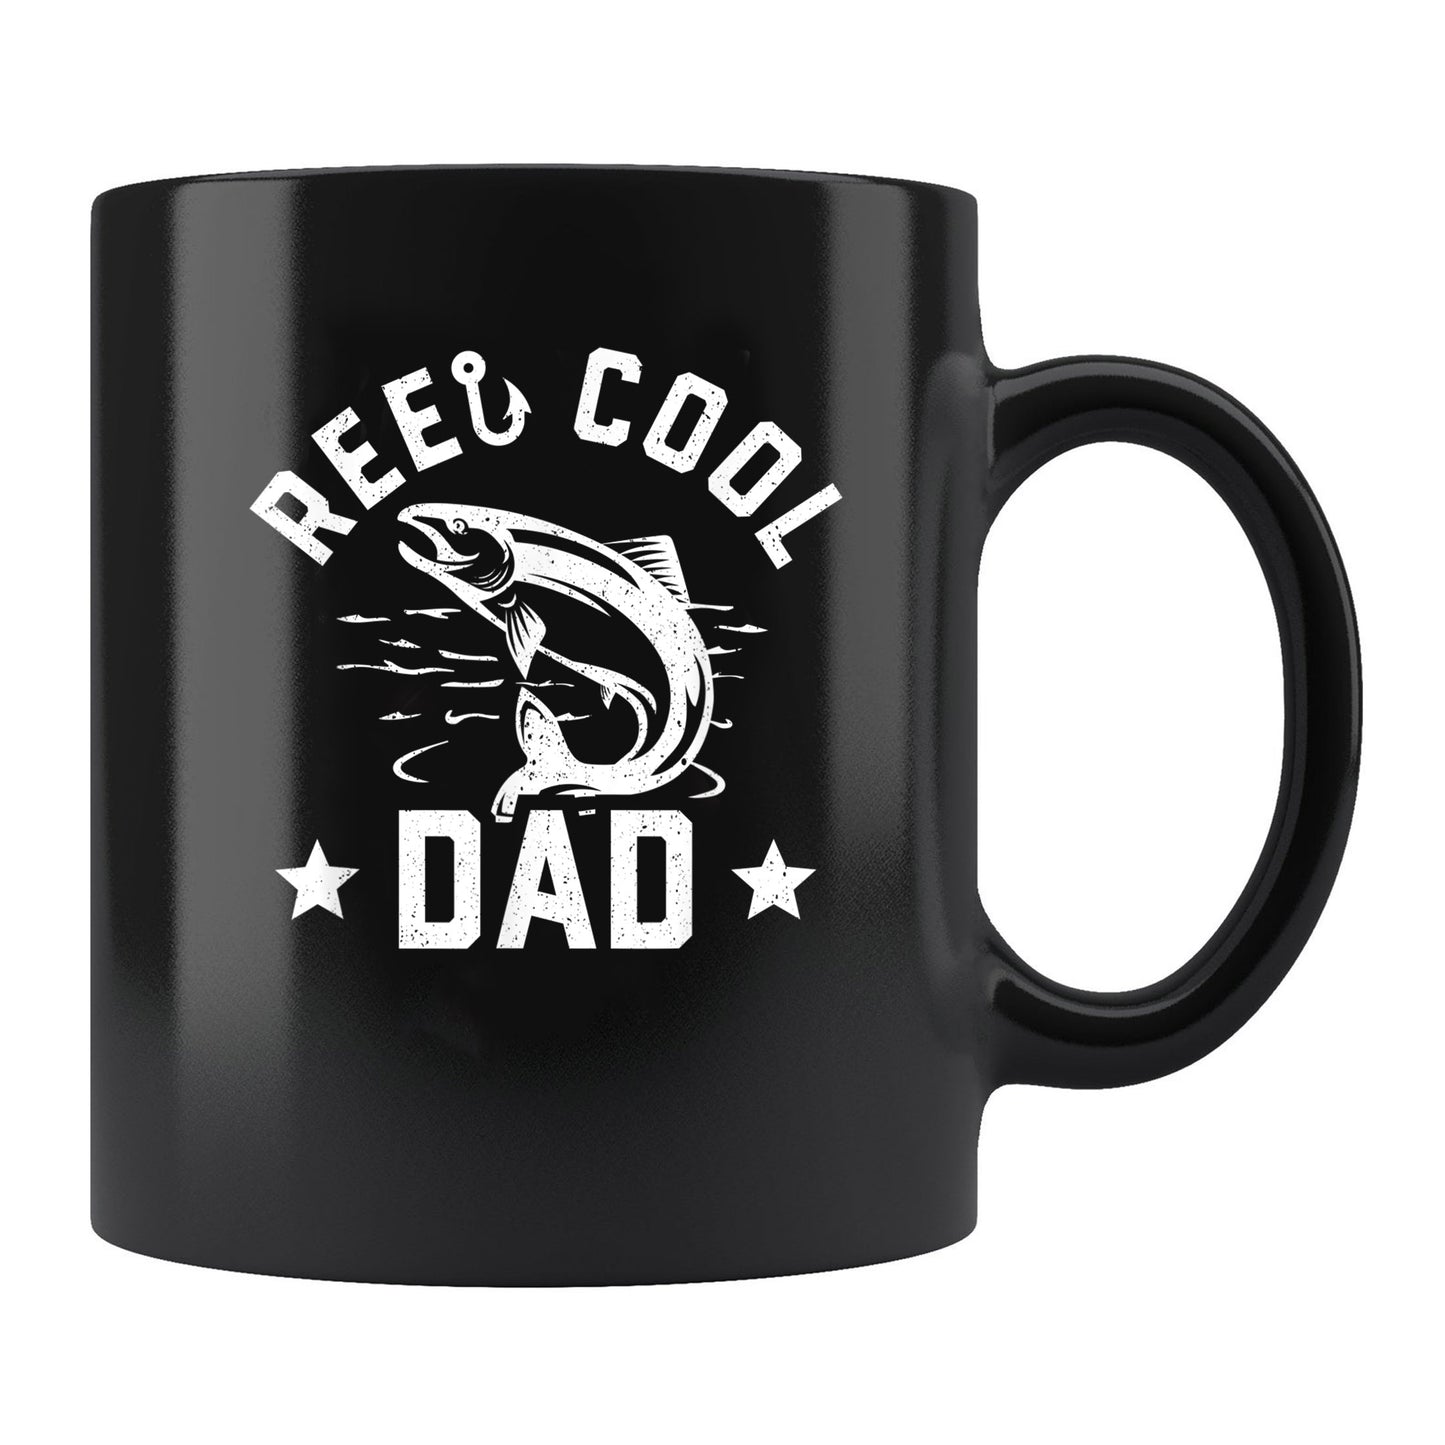 Reel Cool Dad Mug Fishing Daddy Mug , 11oz or 15oz, Happy Fathers Day Gift Ideas For Dad